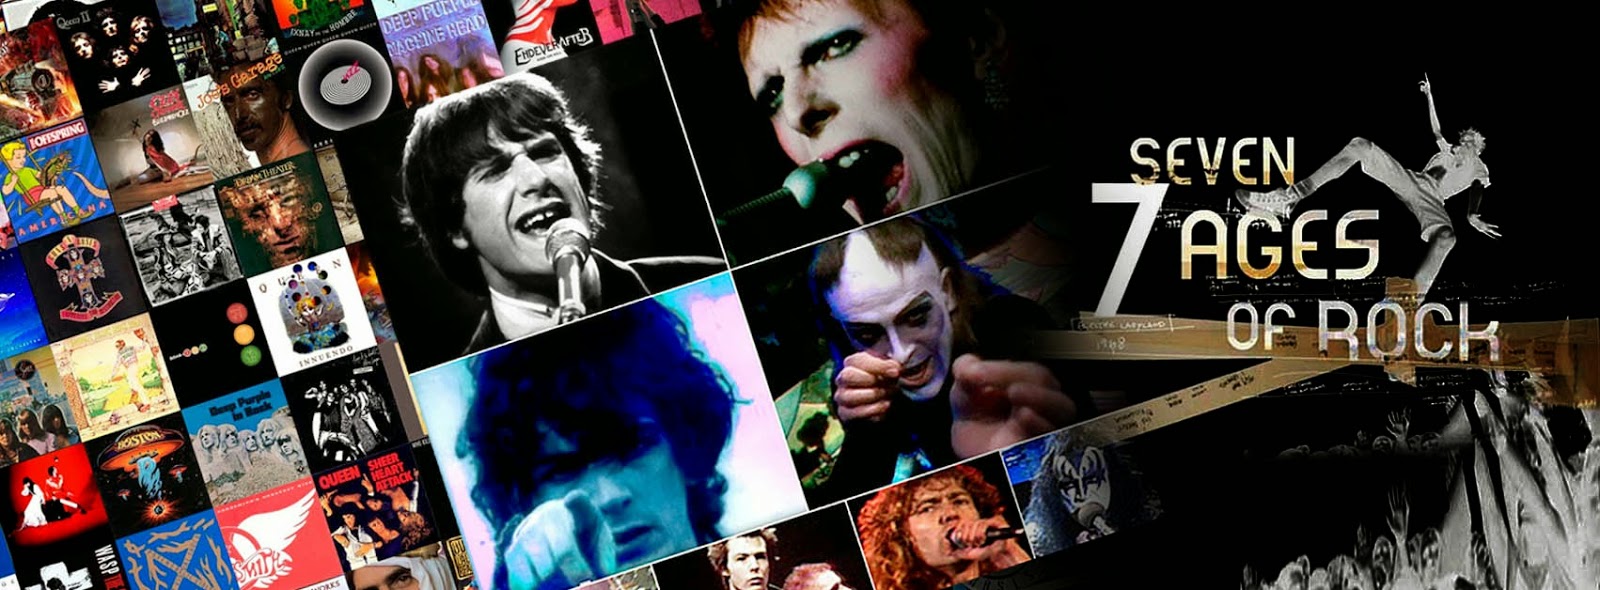 La música y el espectáculo del Rock habían recorrido años luz desde los espectáculos lumínicos de Velvet Underground, ganaron sofisticación y estilo con David Bowie y Roxi Music, se volvieron surrealistas con Génesis, alcanzaron dimensiones épicas con los espectáculos de Pink Floyd.